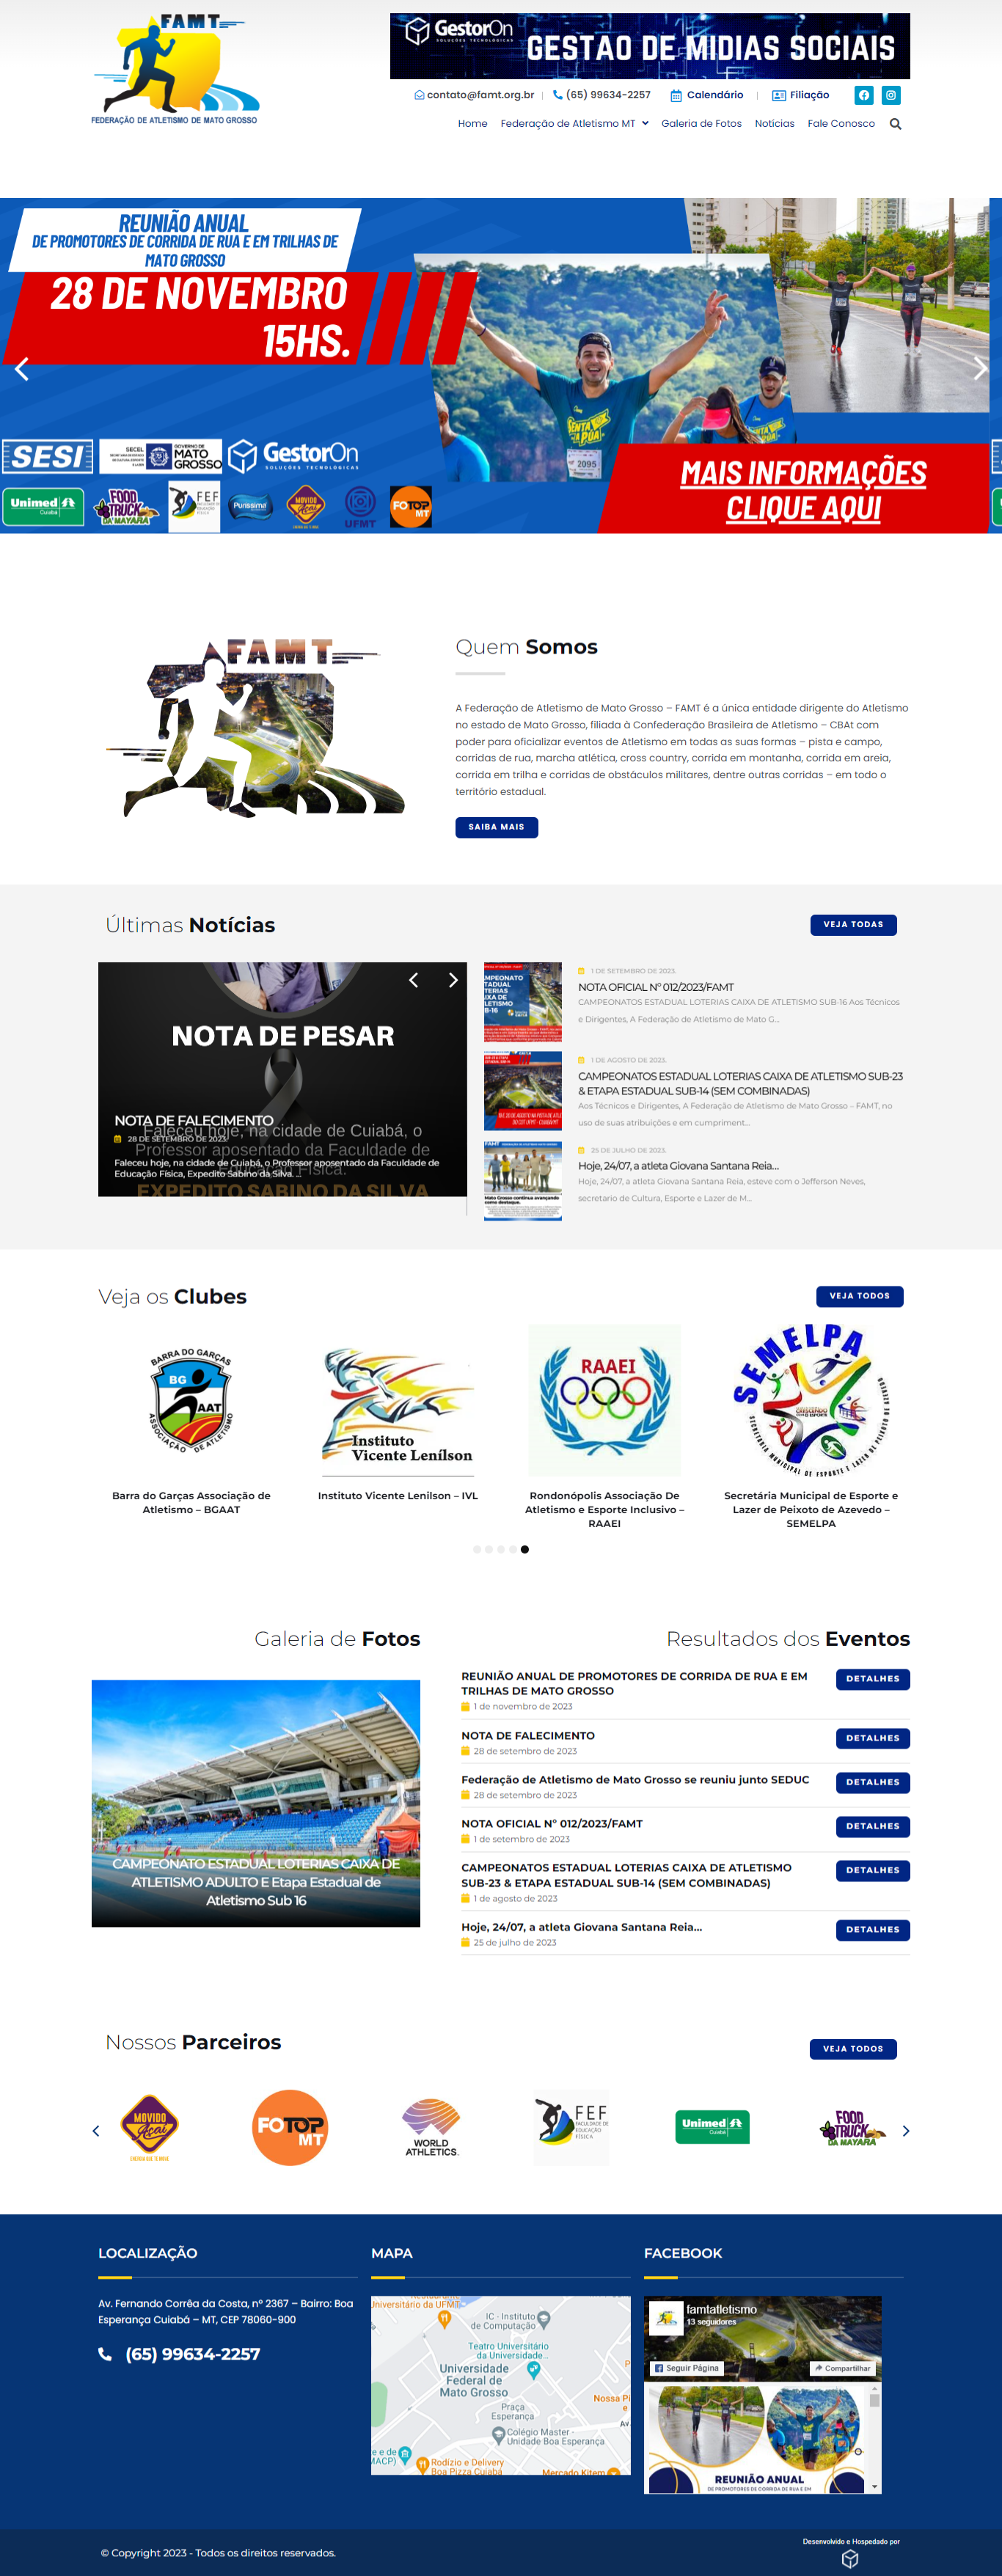 FAMT - Federação de Atletismo Mato Grosso - famt.org.br